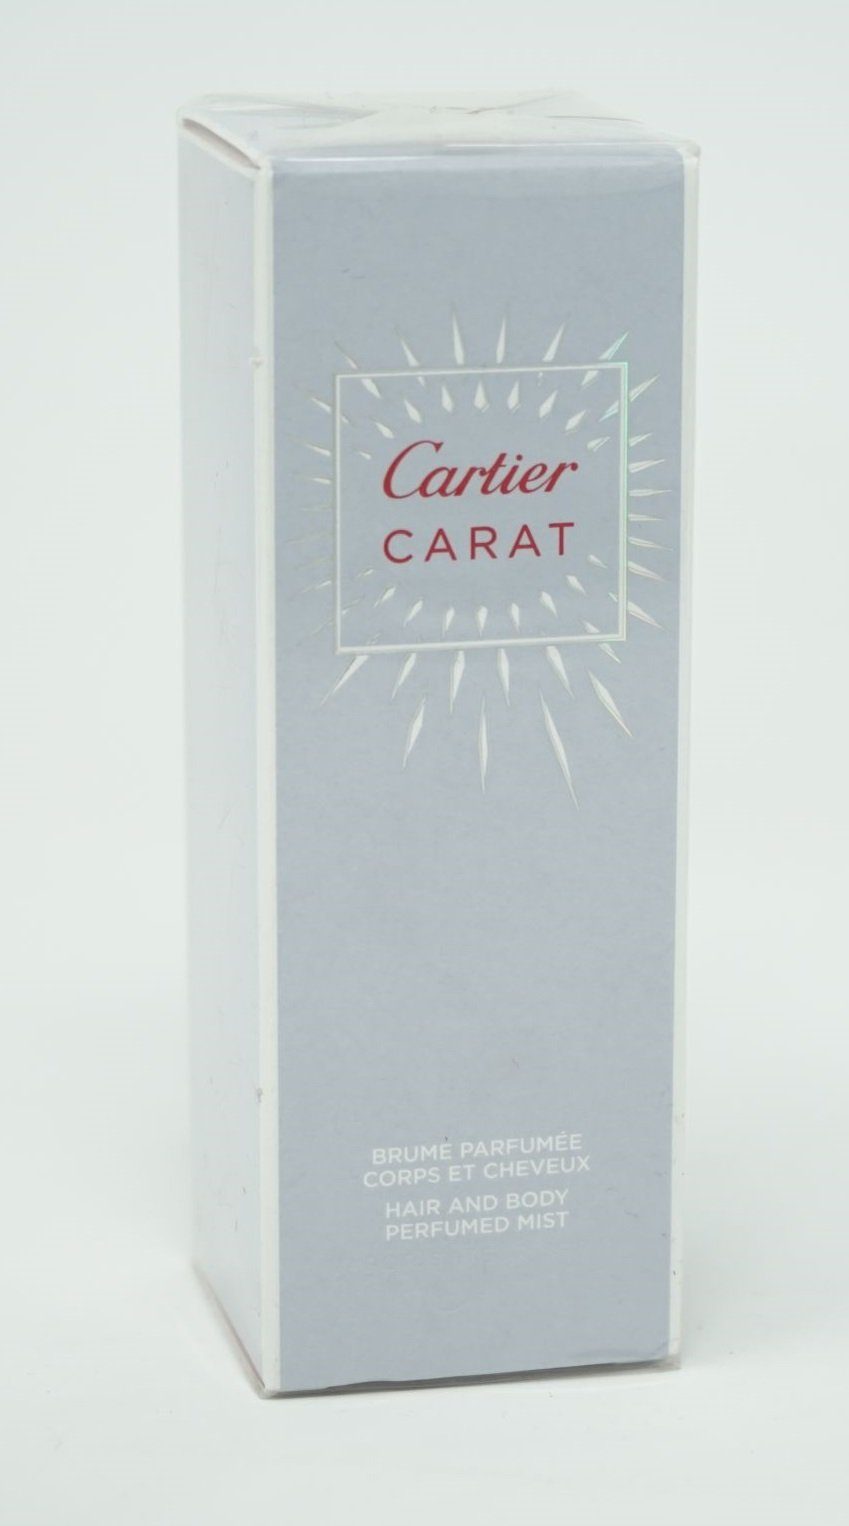 Cartier Körperspray Cartier Carat Hair and Body Perfumed Mist 100ml